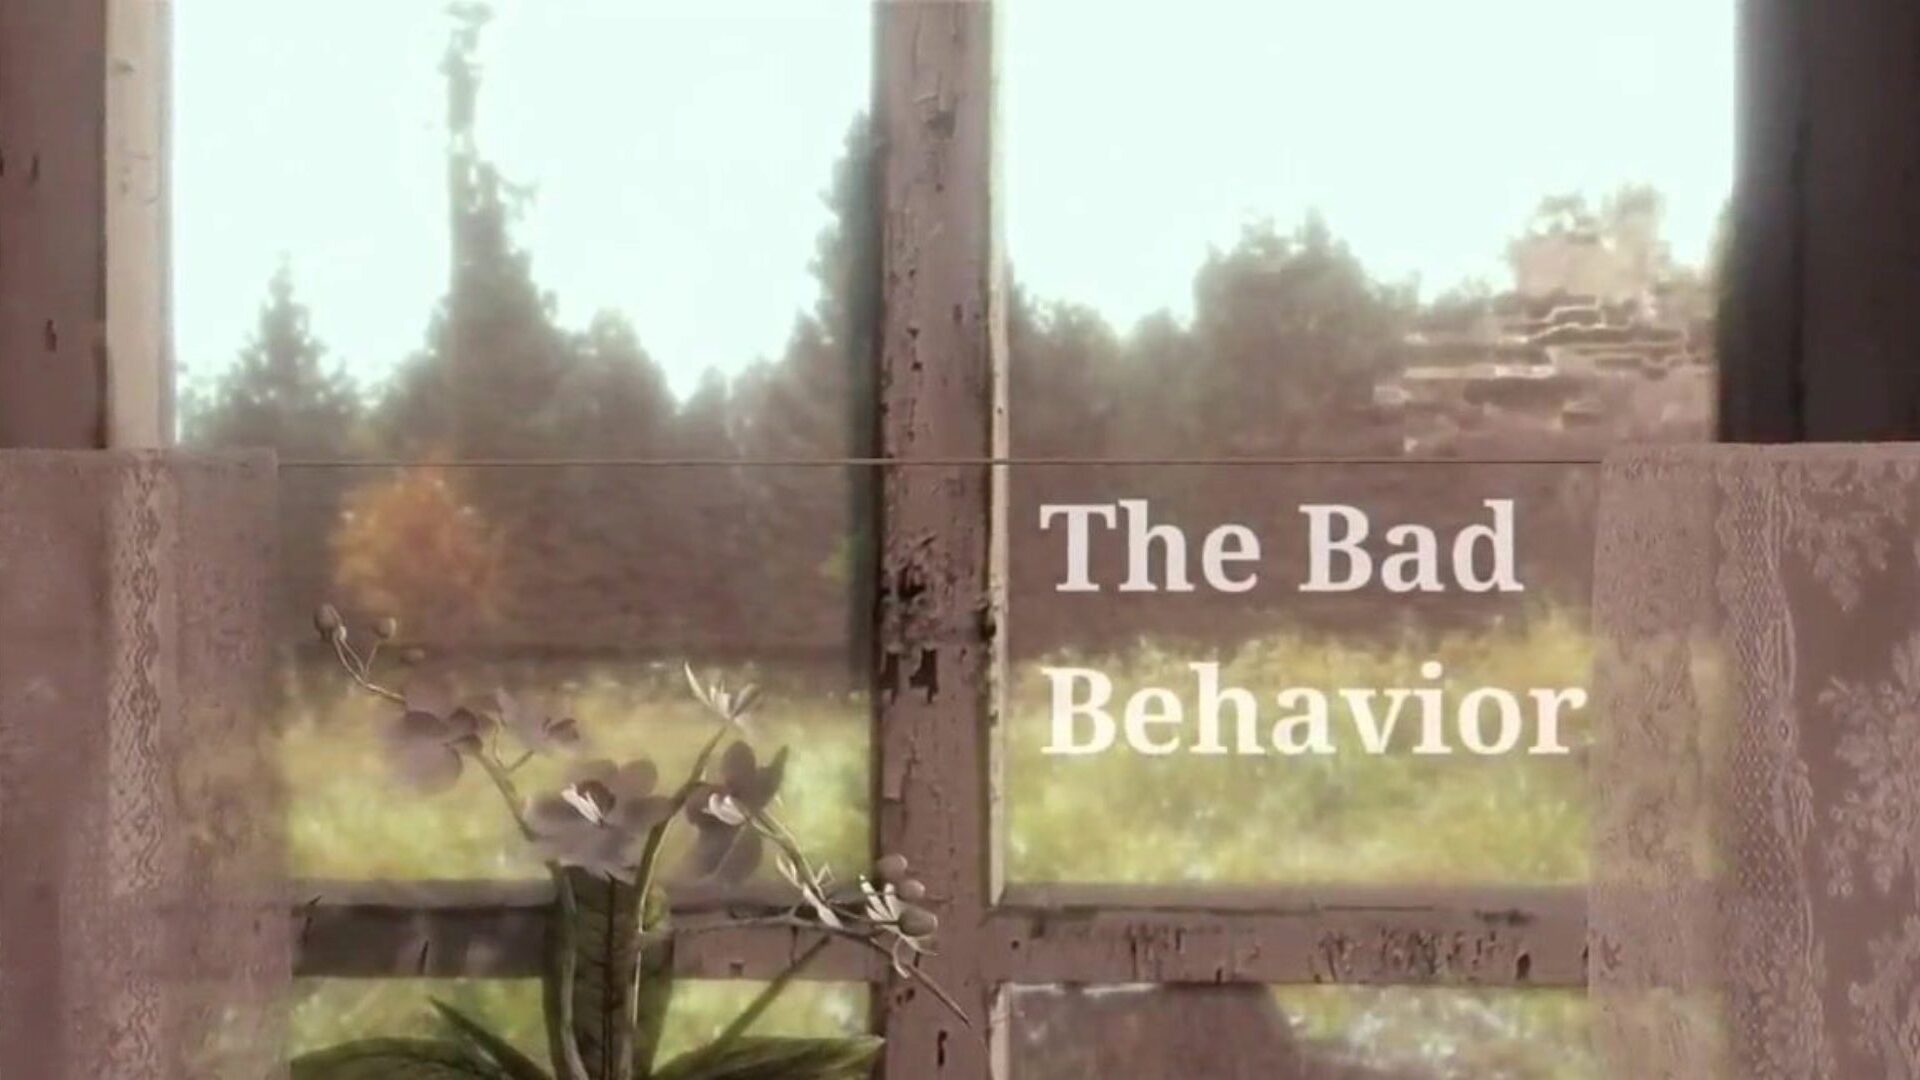 The Bad Behavior: darmowe filmy porno HD w 60 klatkach na sekundę cg - xhamster oglądaj za darmo odcinek orgii w kanale Bad Behavior, z najseksowniejszą kolekcją scen z odcinków porno w 60 klatkach na sekundę i hentai w HD